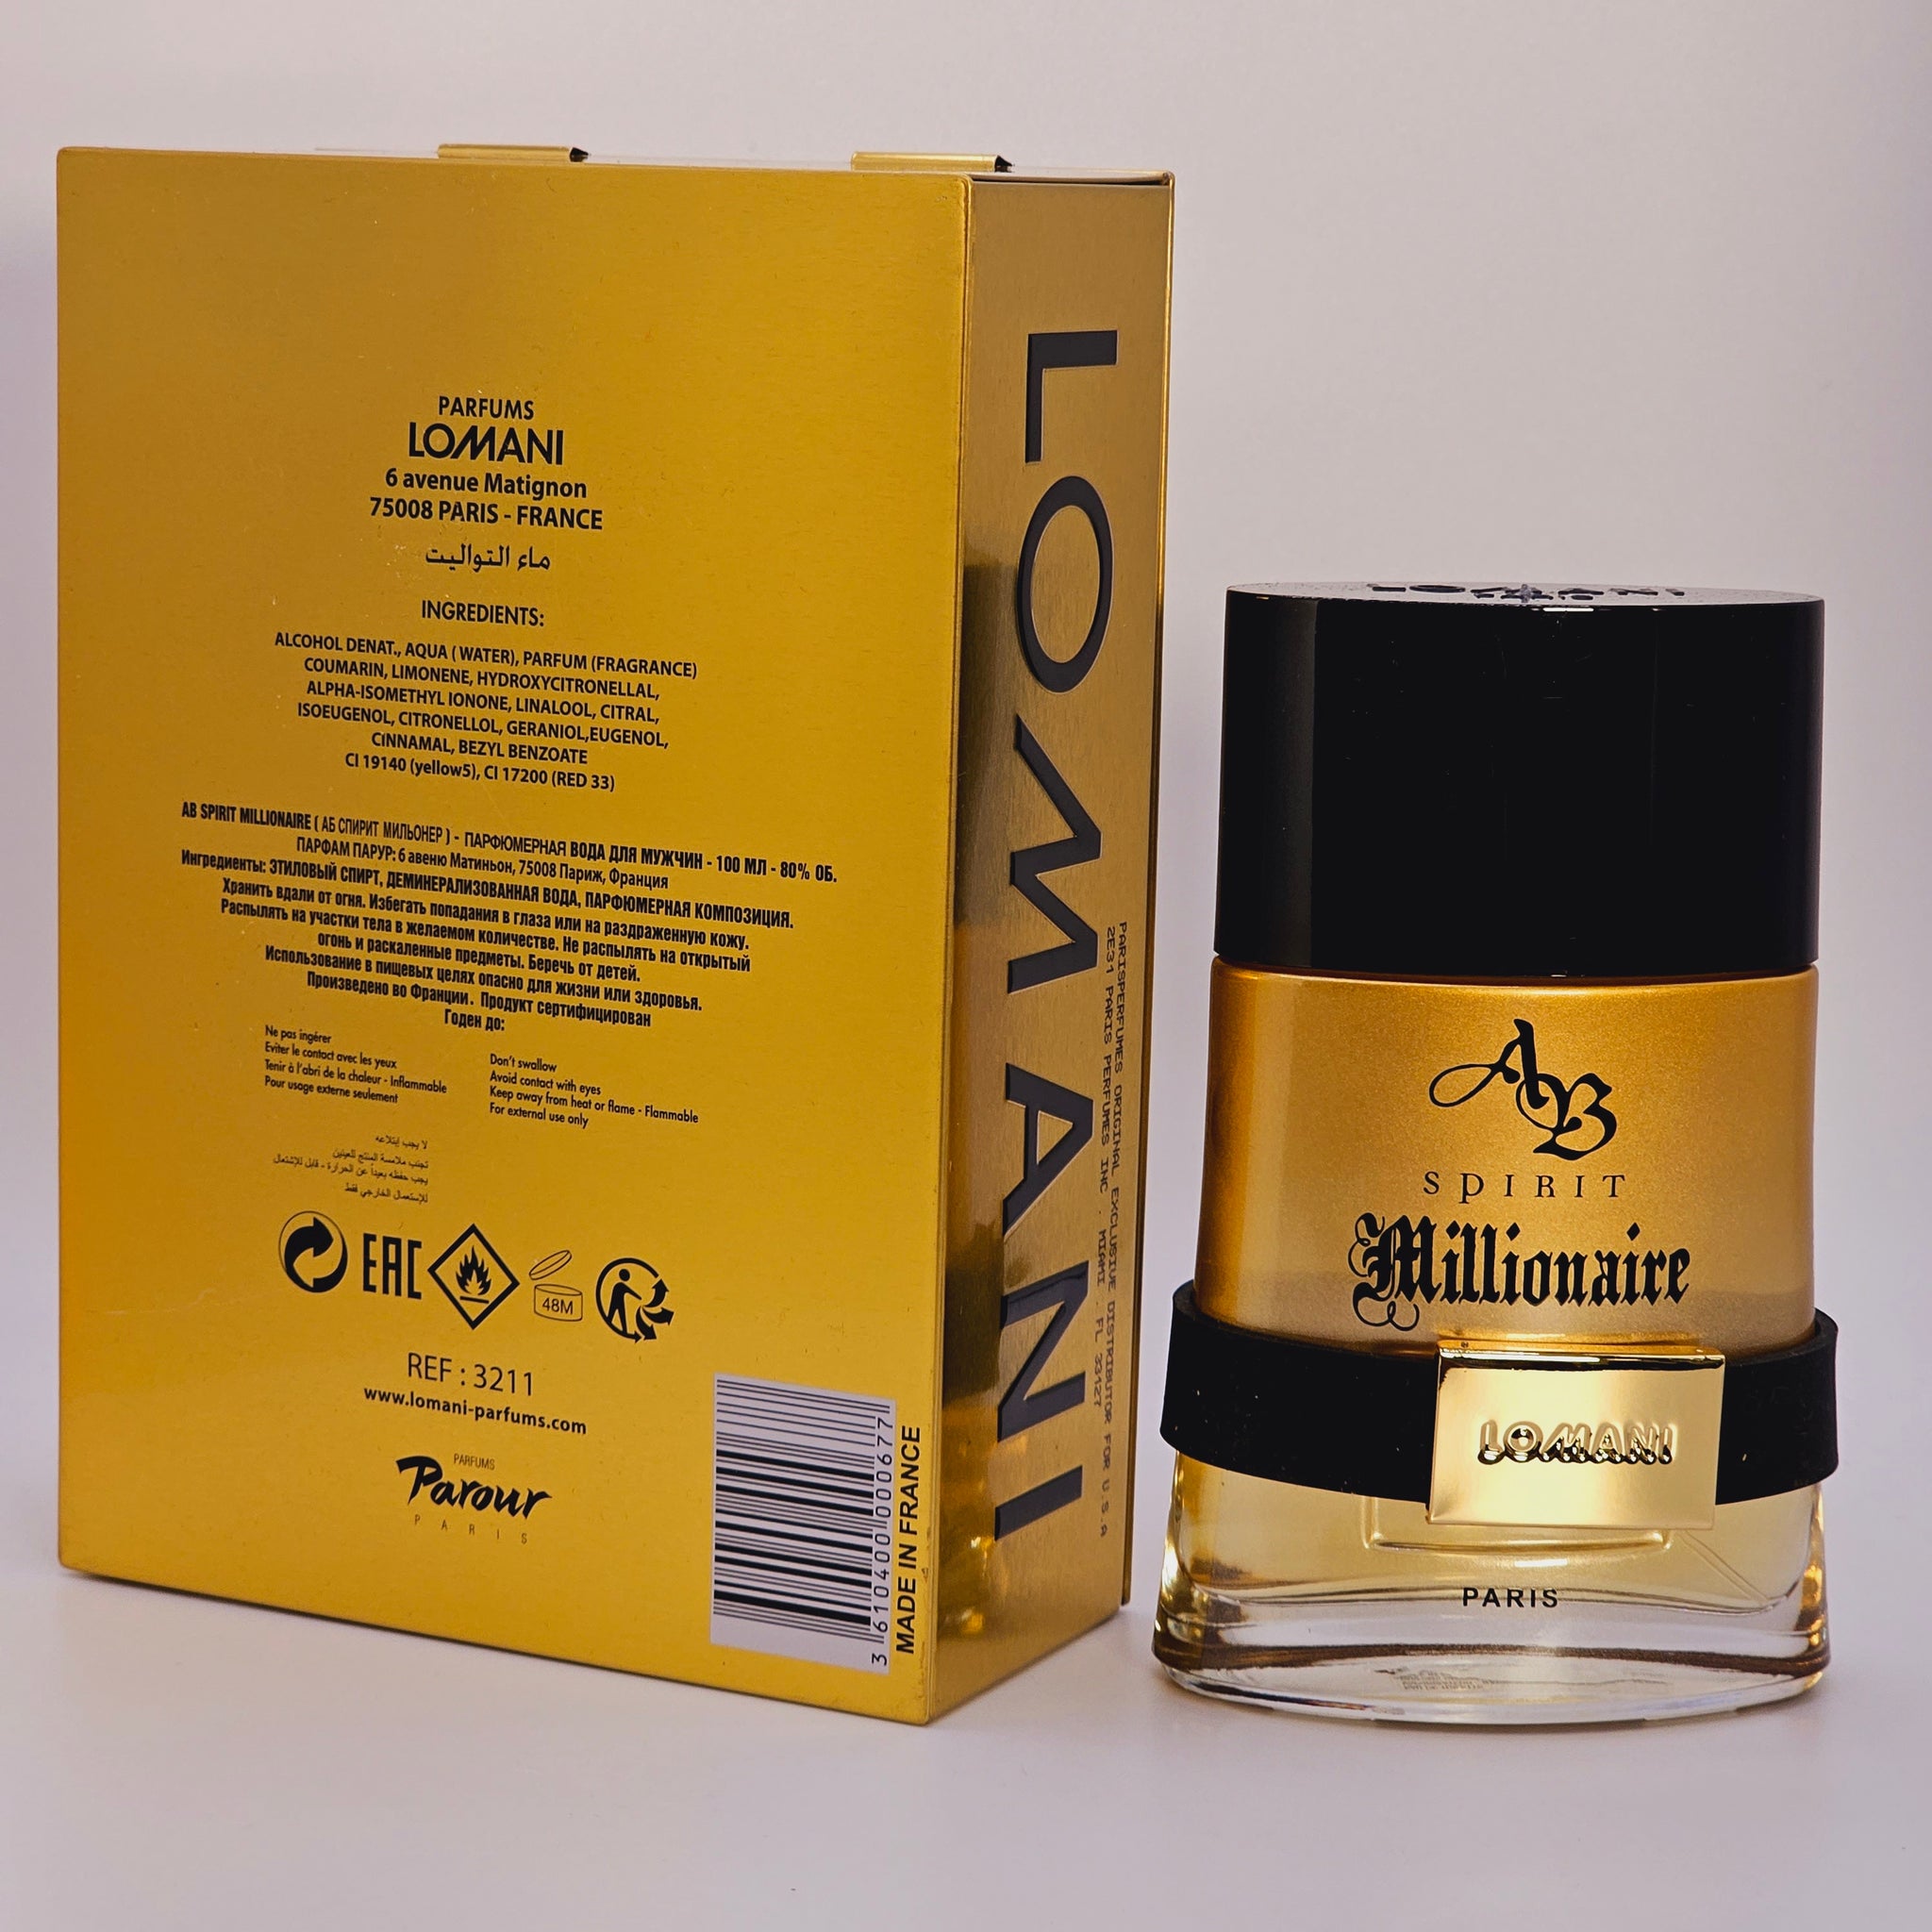 AB Spirit Millionaire by Lomani for Men - 3.3 oz Eau De Toilette